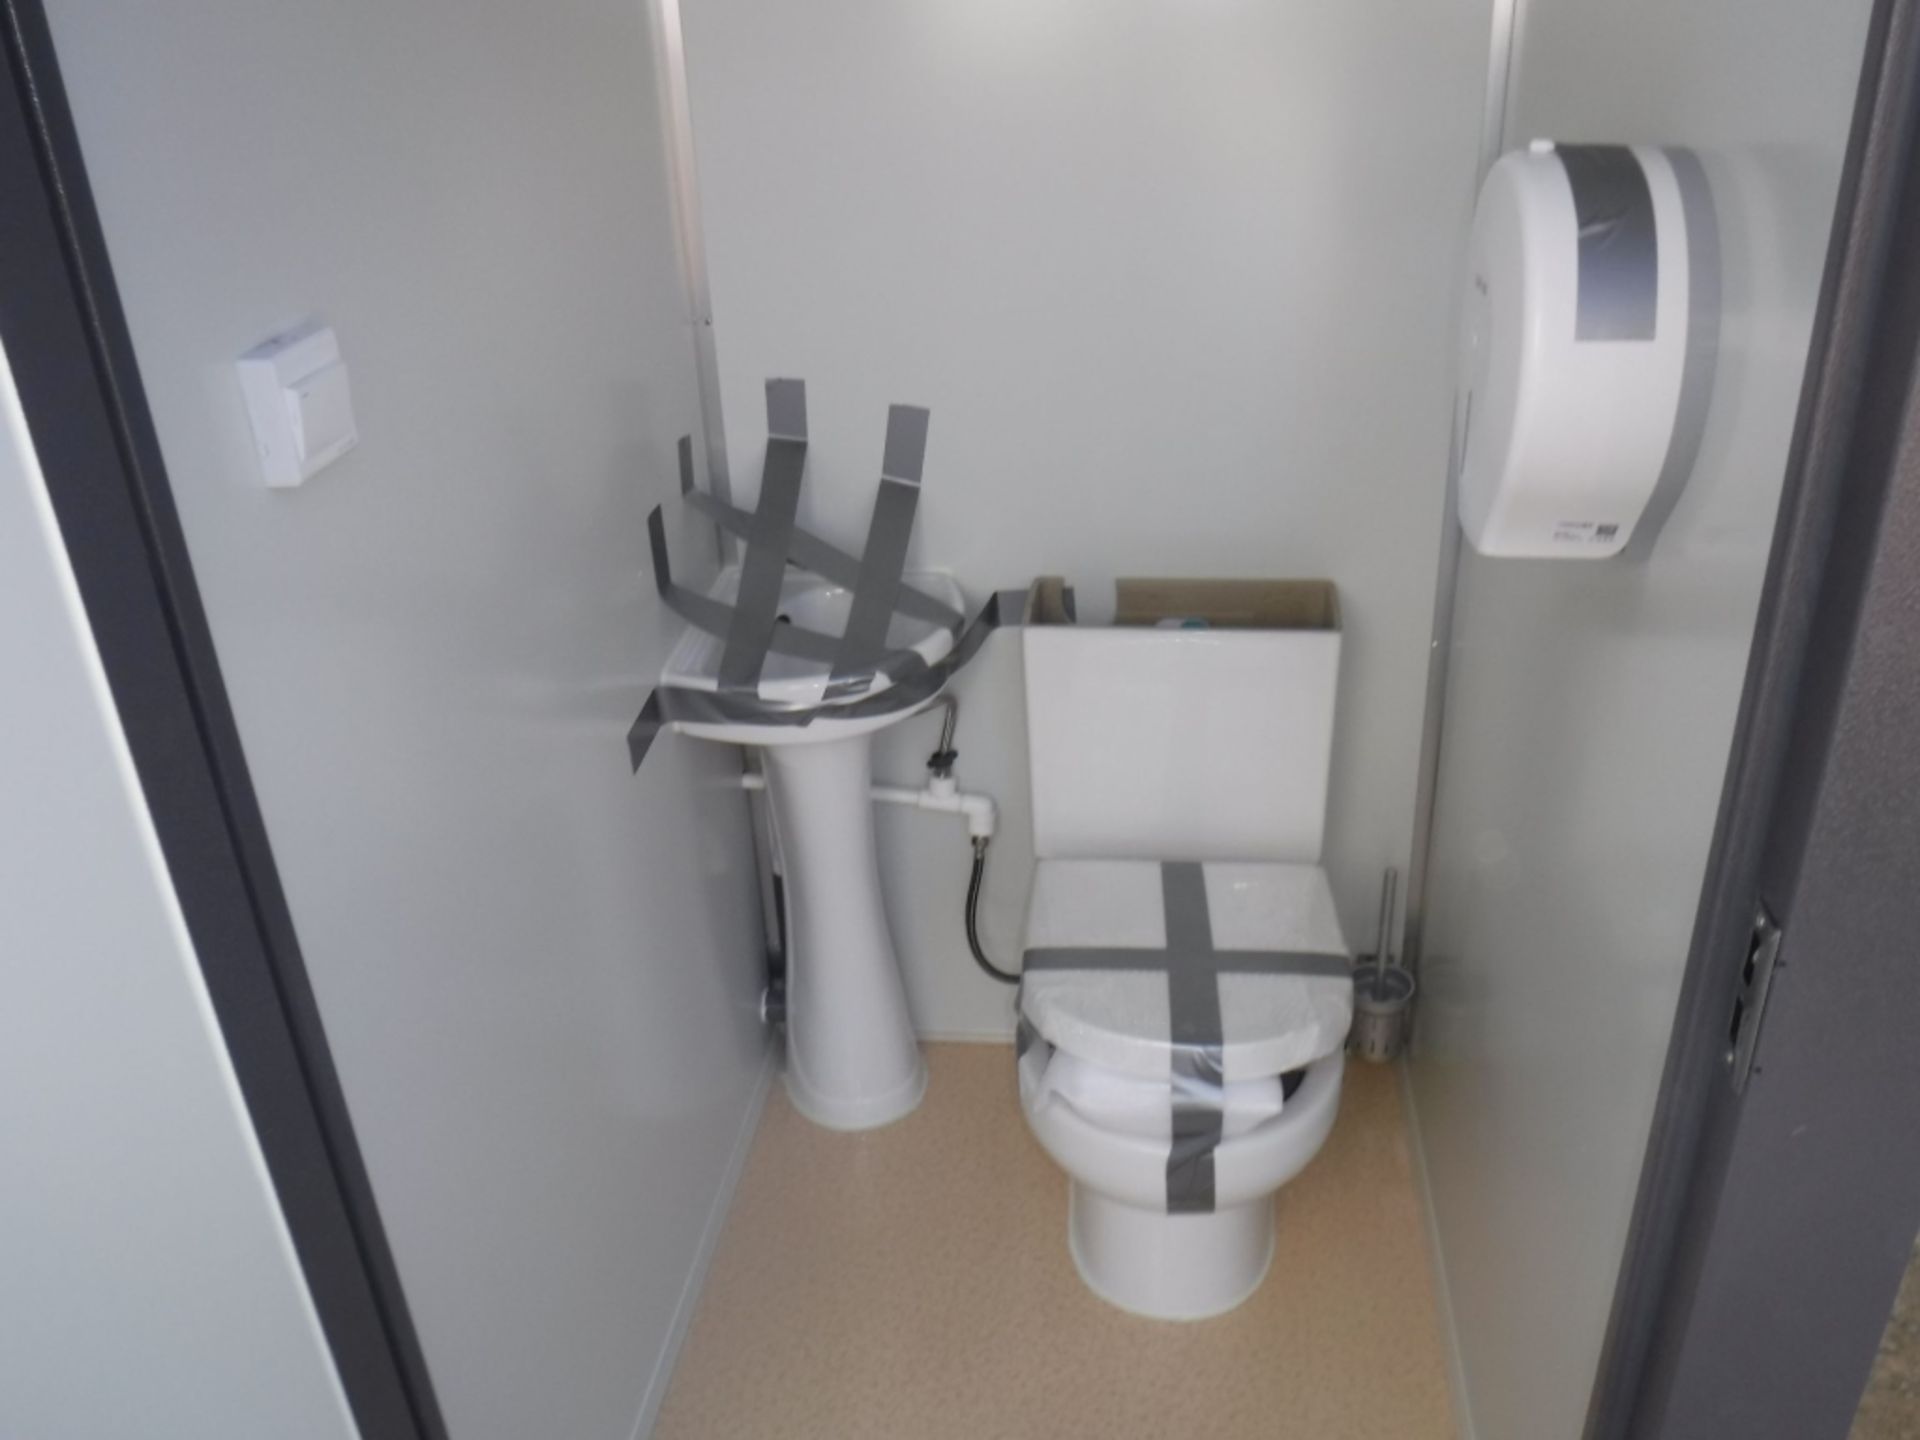 Unused 2020 Bastone Dual Toilet Unit w/Sinks, - Image 12 of 19